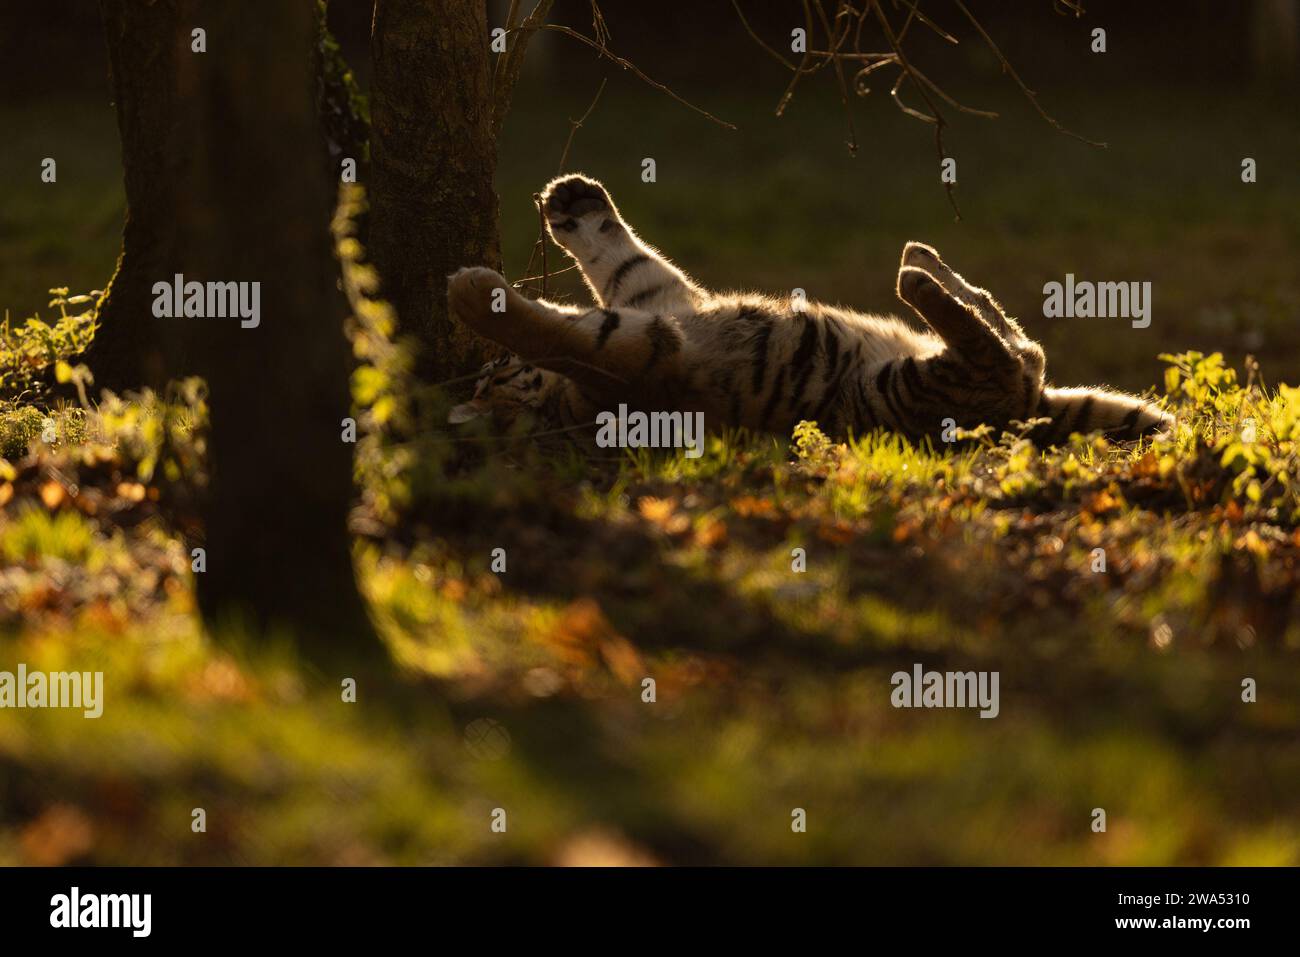 Accogliendo il nuovo anno a braccia aperte nel Regno Unito sono state catturate immagini ACCATTIVANTI di due cuccioli di tigre siberiane che giocano e si fanno doccia a vicenda con affetto Foto Stock